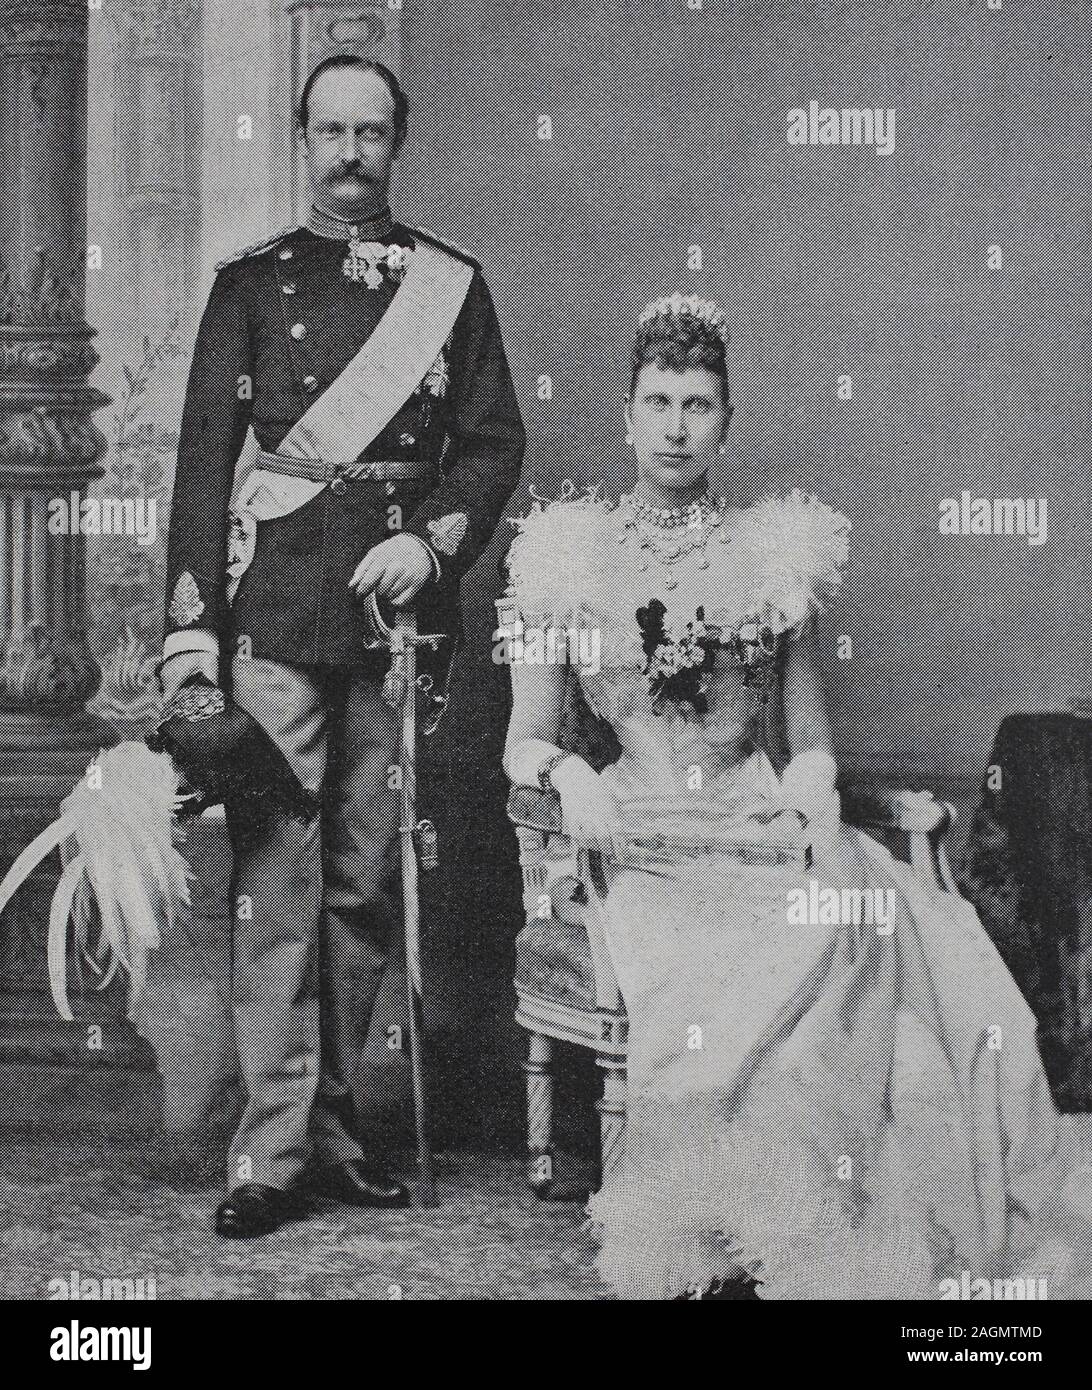 Digital verbesserte Reproduktion, Friedrich VIII, 1843 - 1912, wurde König von Dänemark von 1906 bis 1912 und Louise von Schweden, Louise Josephine Eugenie, 1851-1926, Königin von Dänemark war, die ursprüngliche Drucken aus dem Jahr 1899 Stockfoto